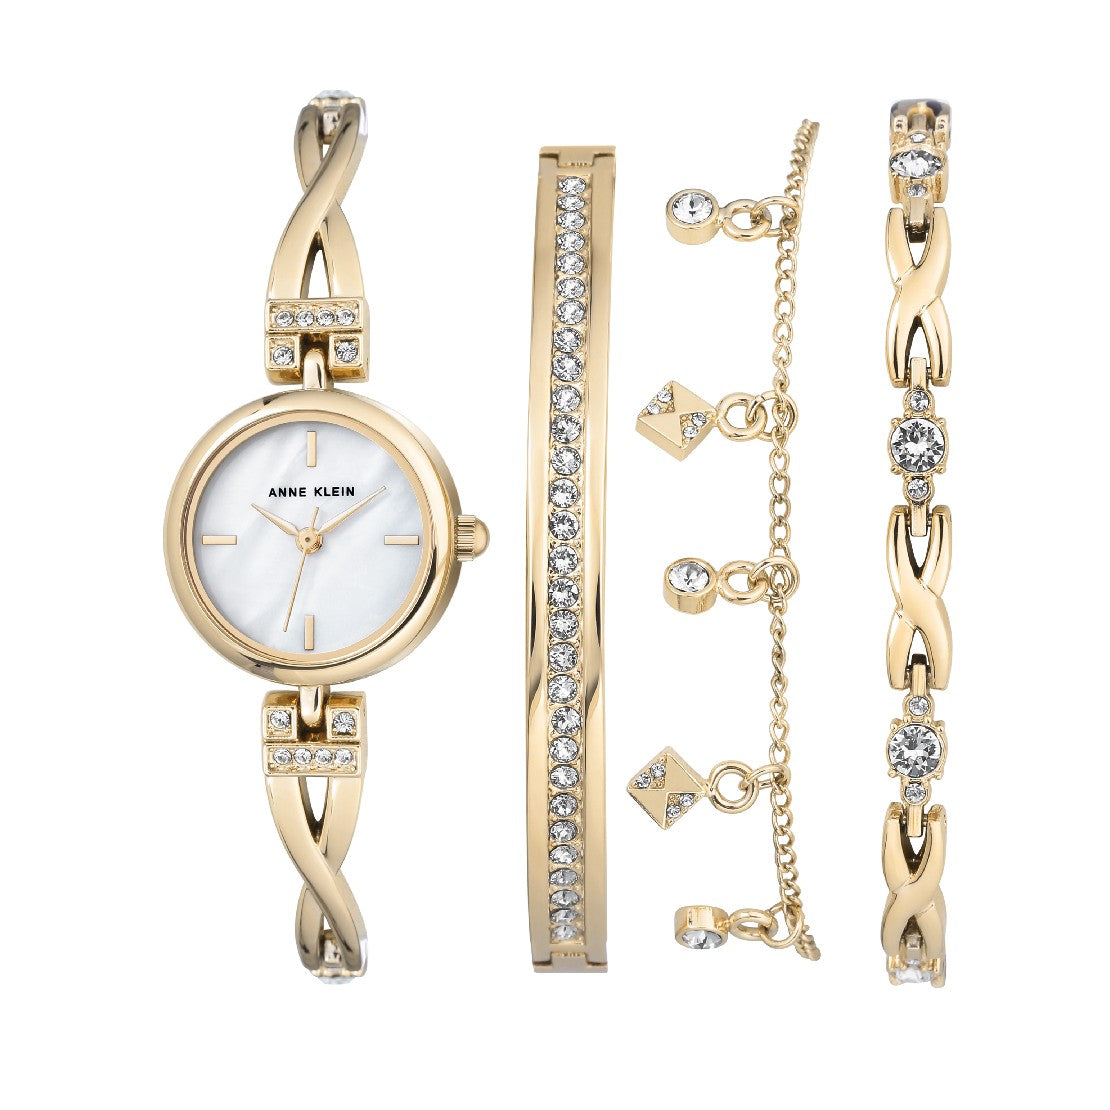 Anne Klein Women's White Pearl Dial Quartz Watch and Bracelet Set - AK-0217+Br 3Pcs